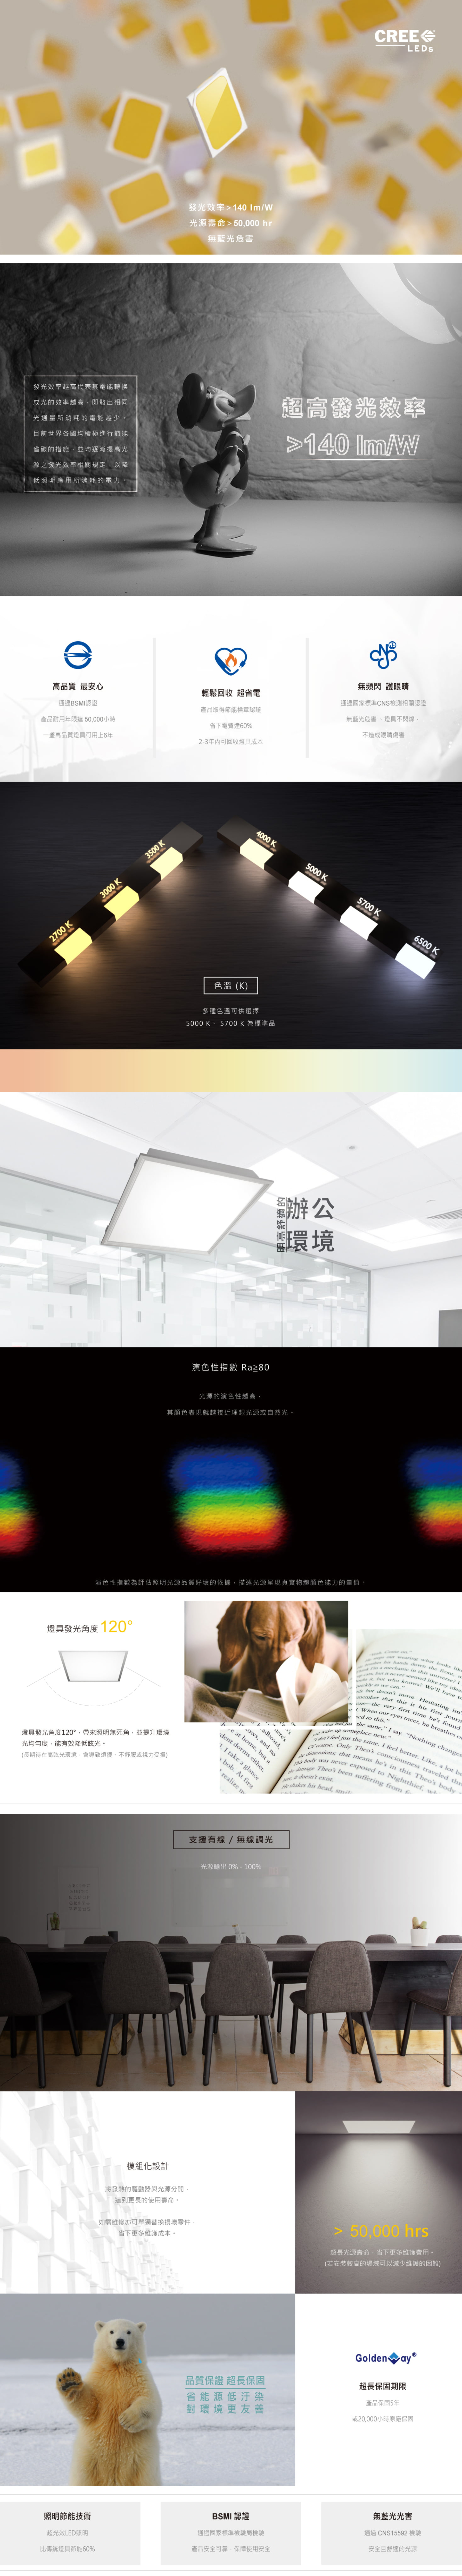 金鍏電子LED平板燈具 GW-552